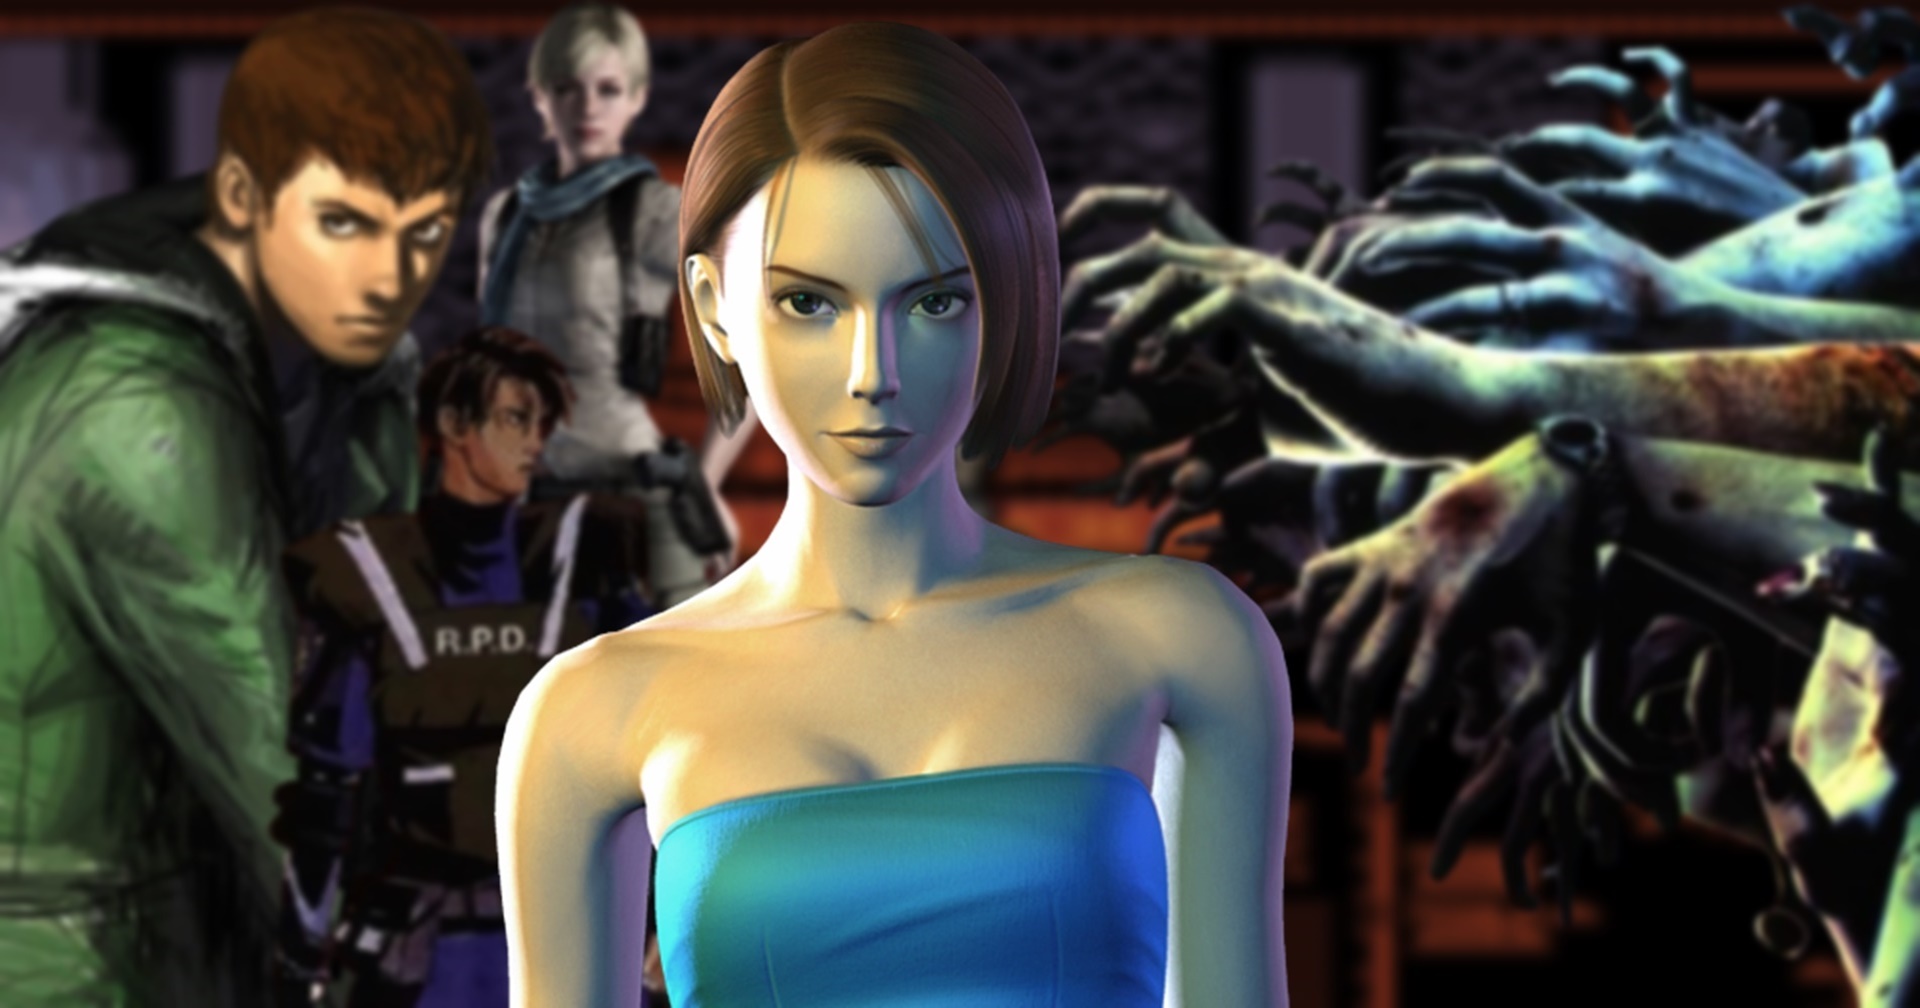 ย้อนดูระบบการเล่นของ Resident Evil ภาคเก่าที่ทำเอาผู้เล่นใหม่เมินไม่อยากเล่น